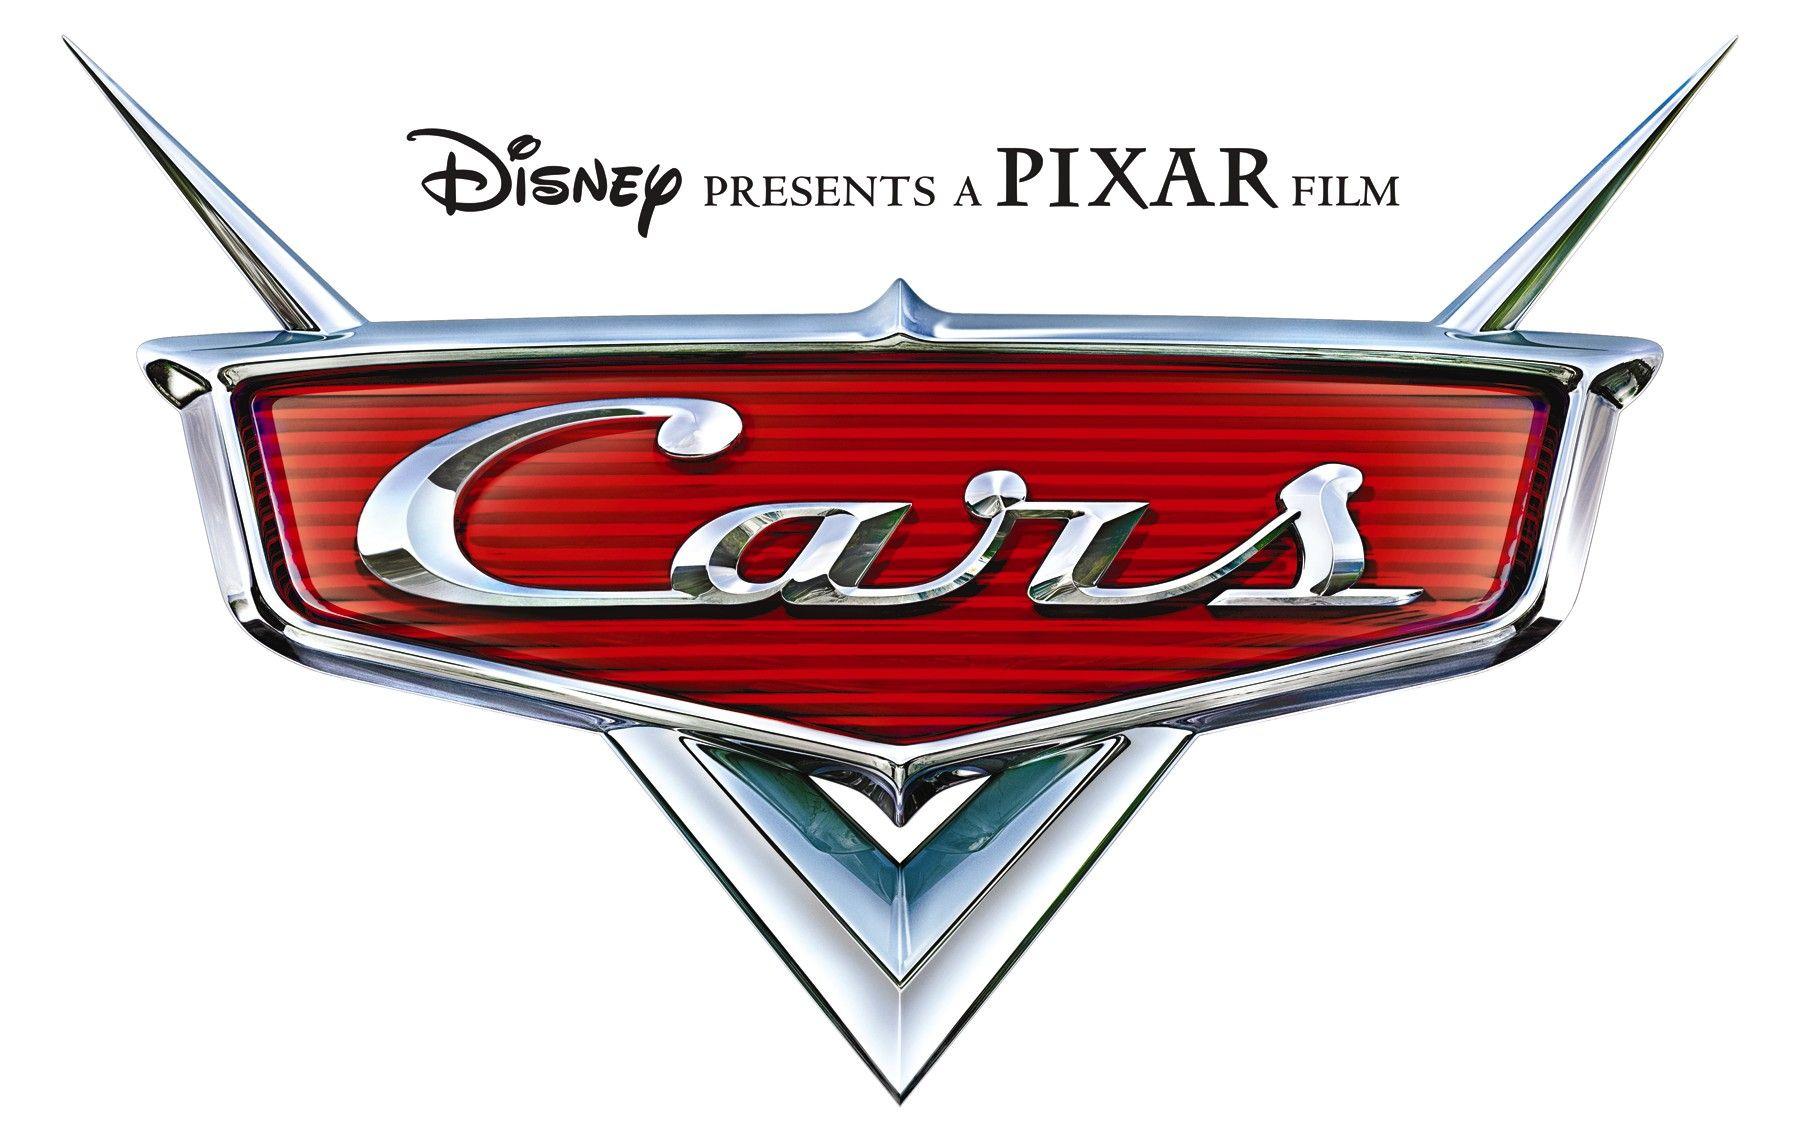 Cars 2 Logo - Cars (series)